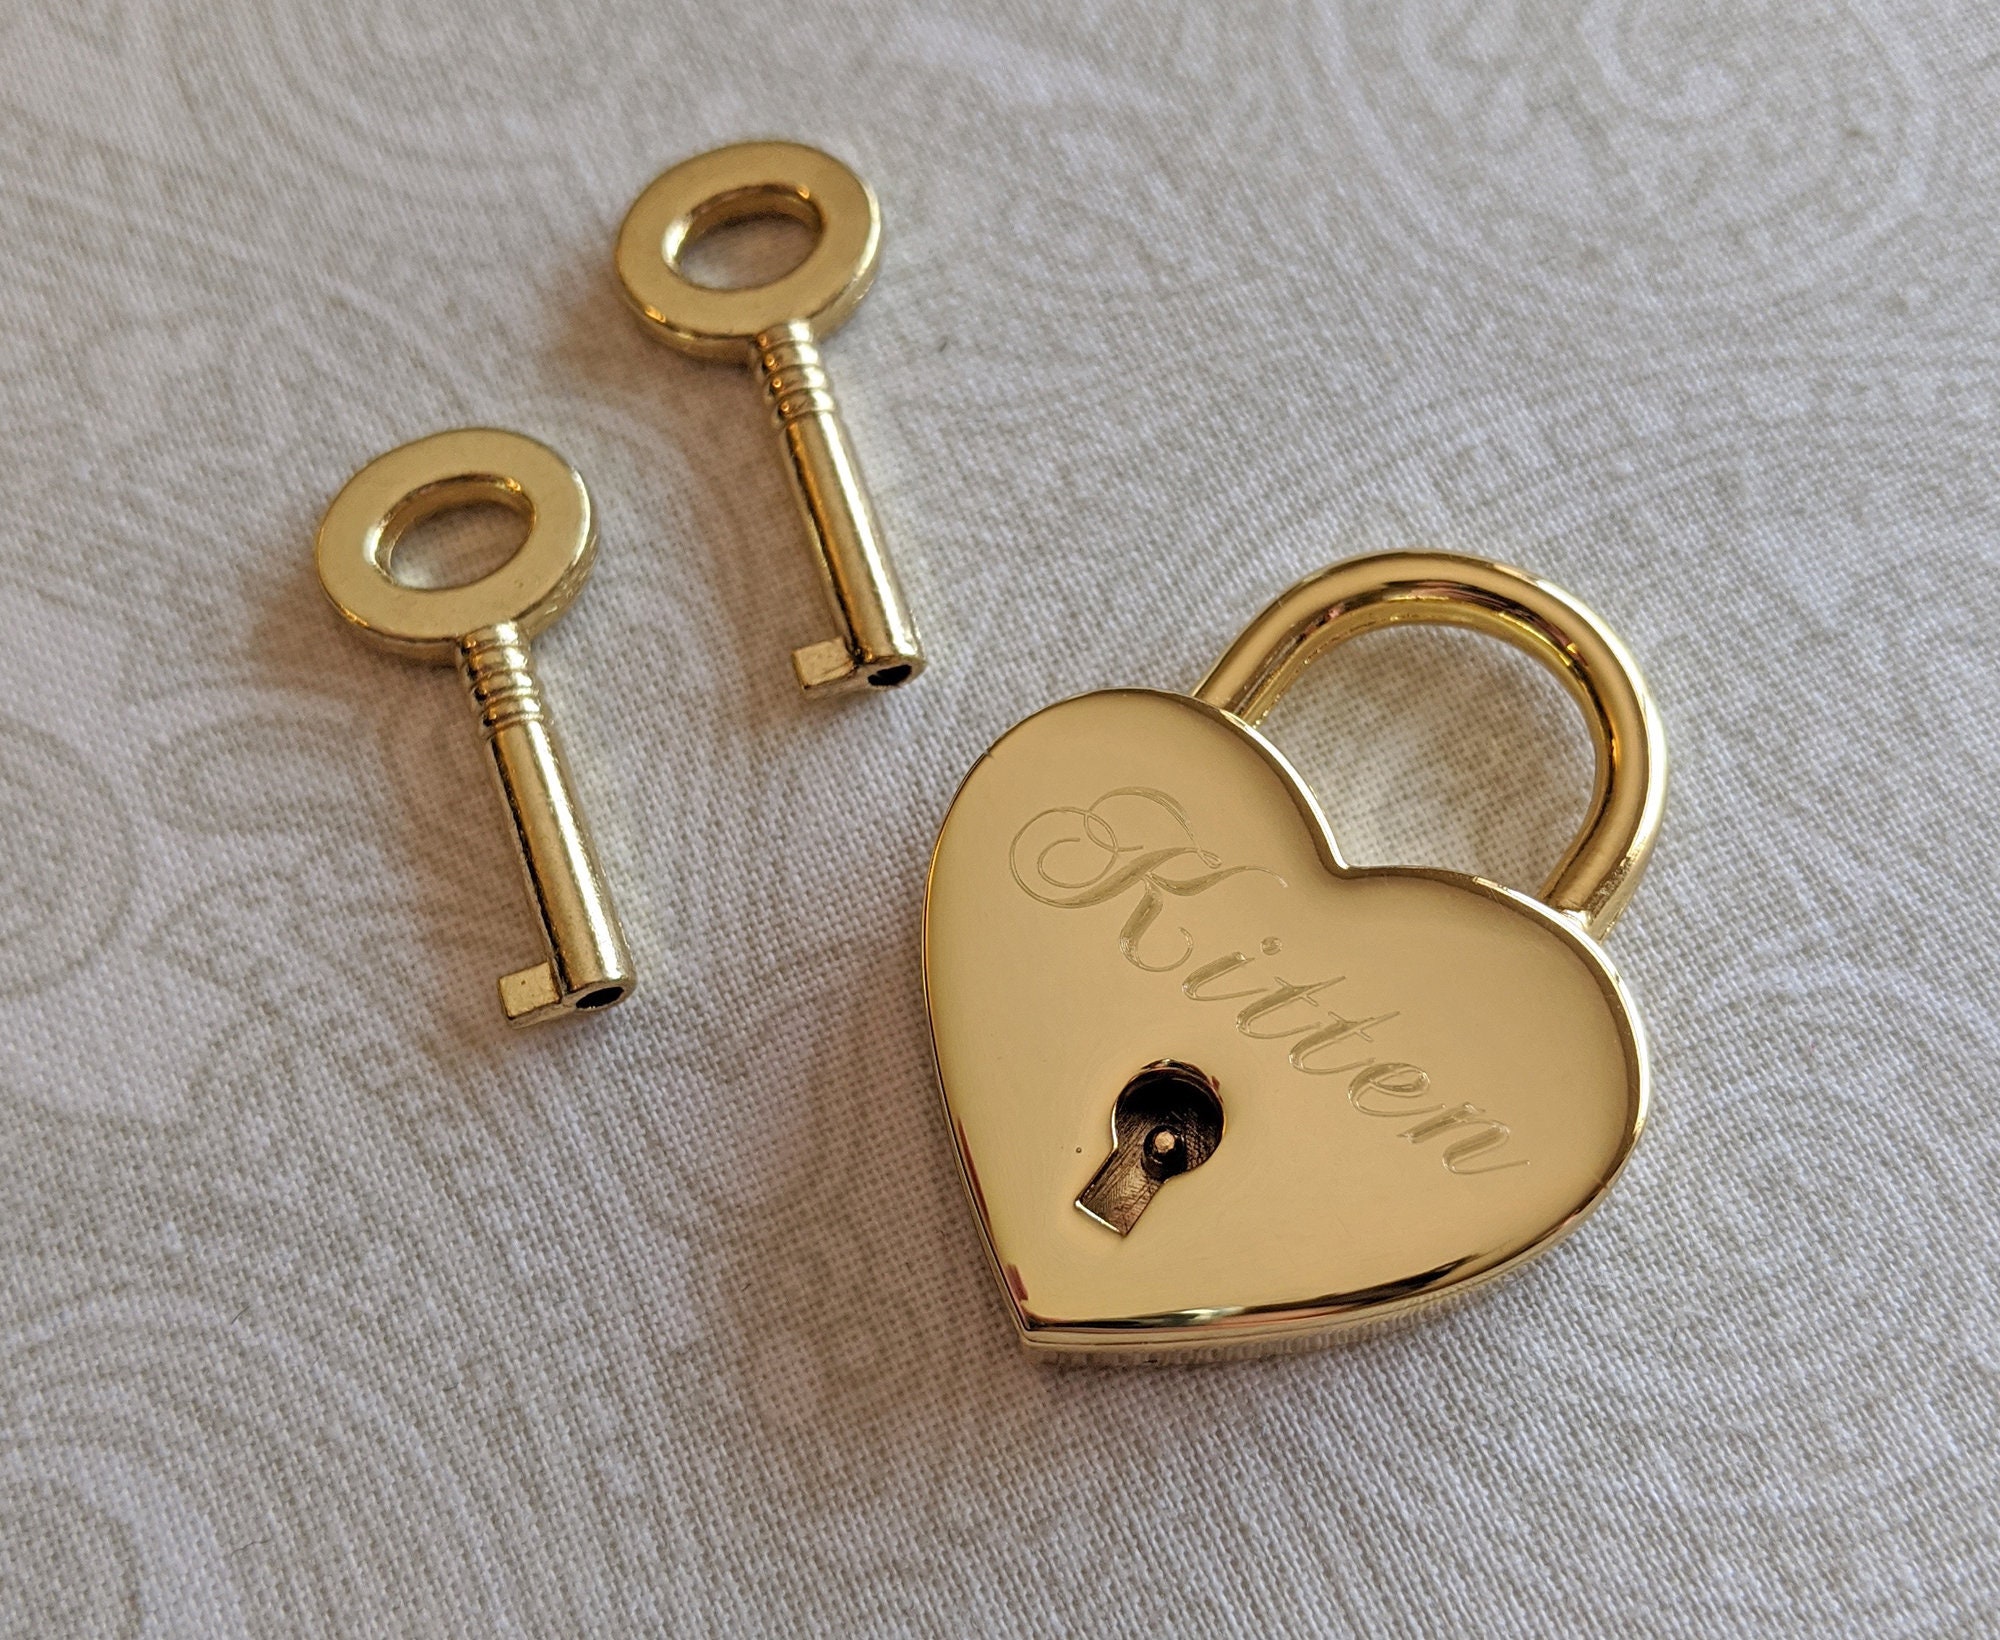 Angoily 1 Set Love Lock Mini Padlock Key Padlock Heart- Shaped Lock Plating  Love Lock Color Wishing Lock Bag Hanging Lock Heart Shaped Padlock Plating